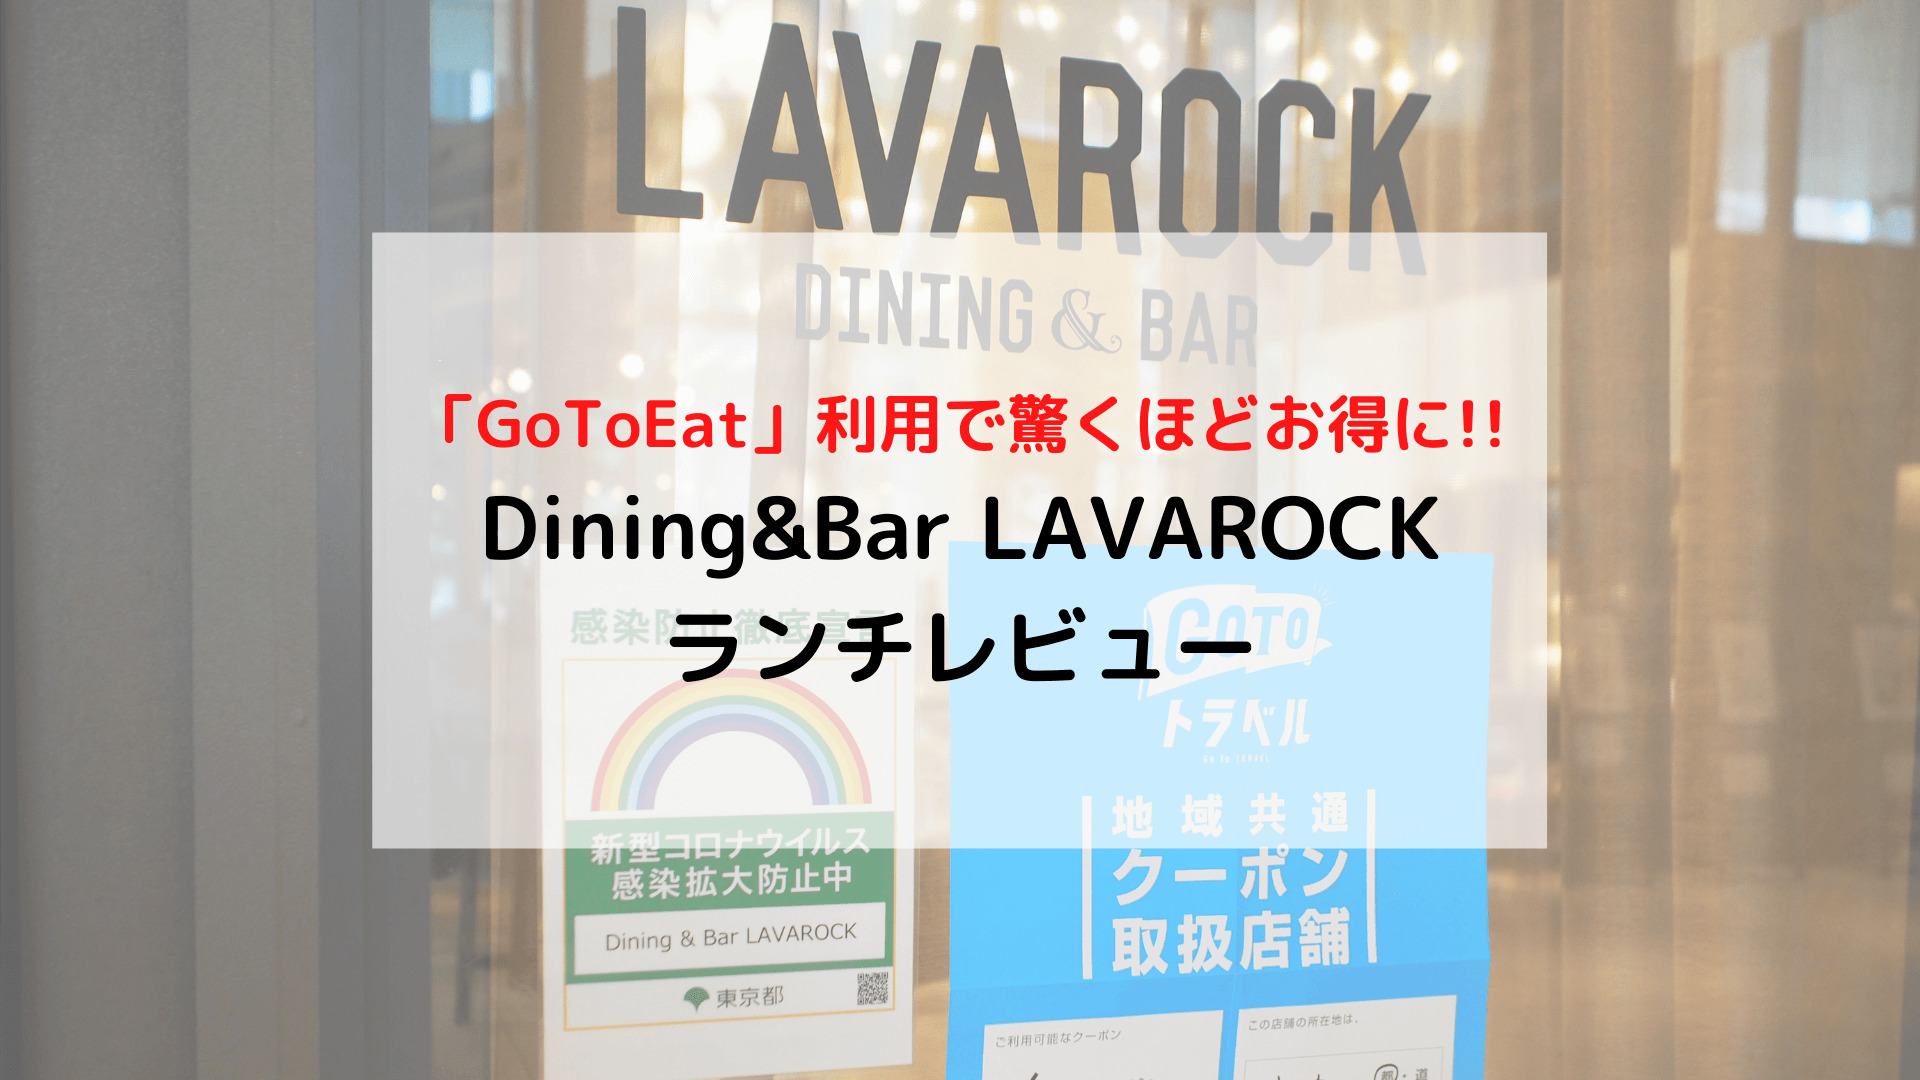 【東京】コスパ最強ランチ コートヤード・バイ・マリオット東京ステーション「Dining＆Bar LAVAROCK」